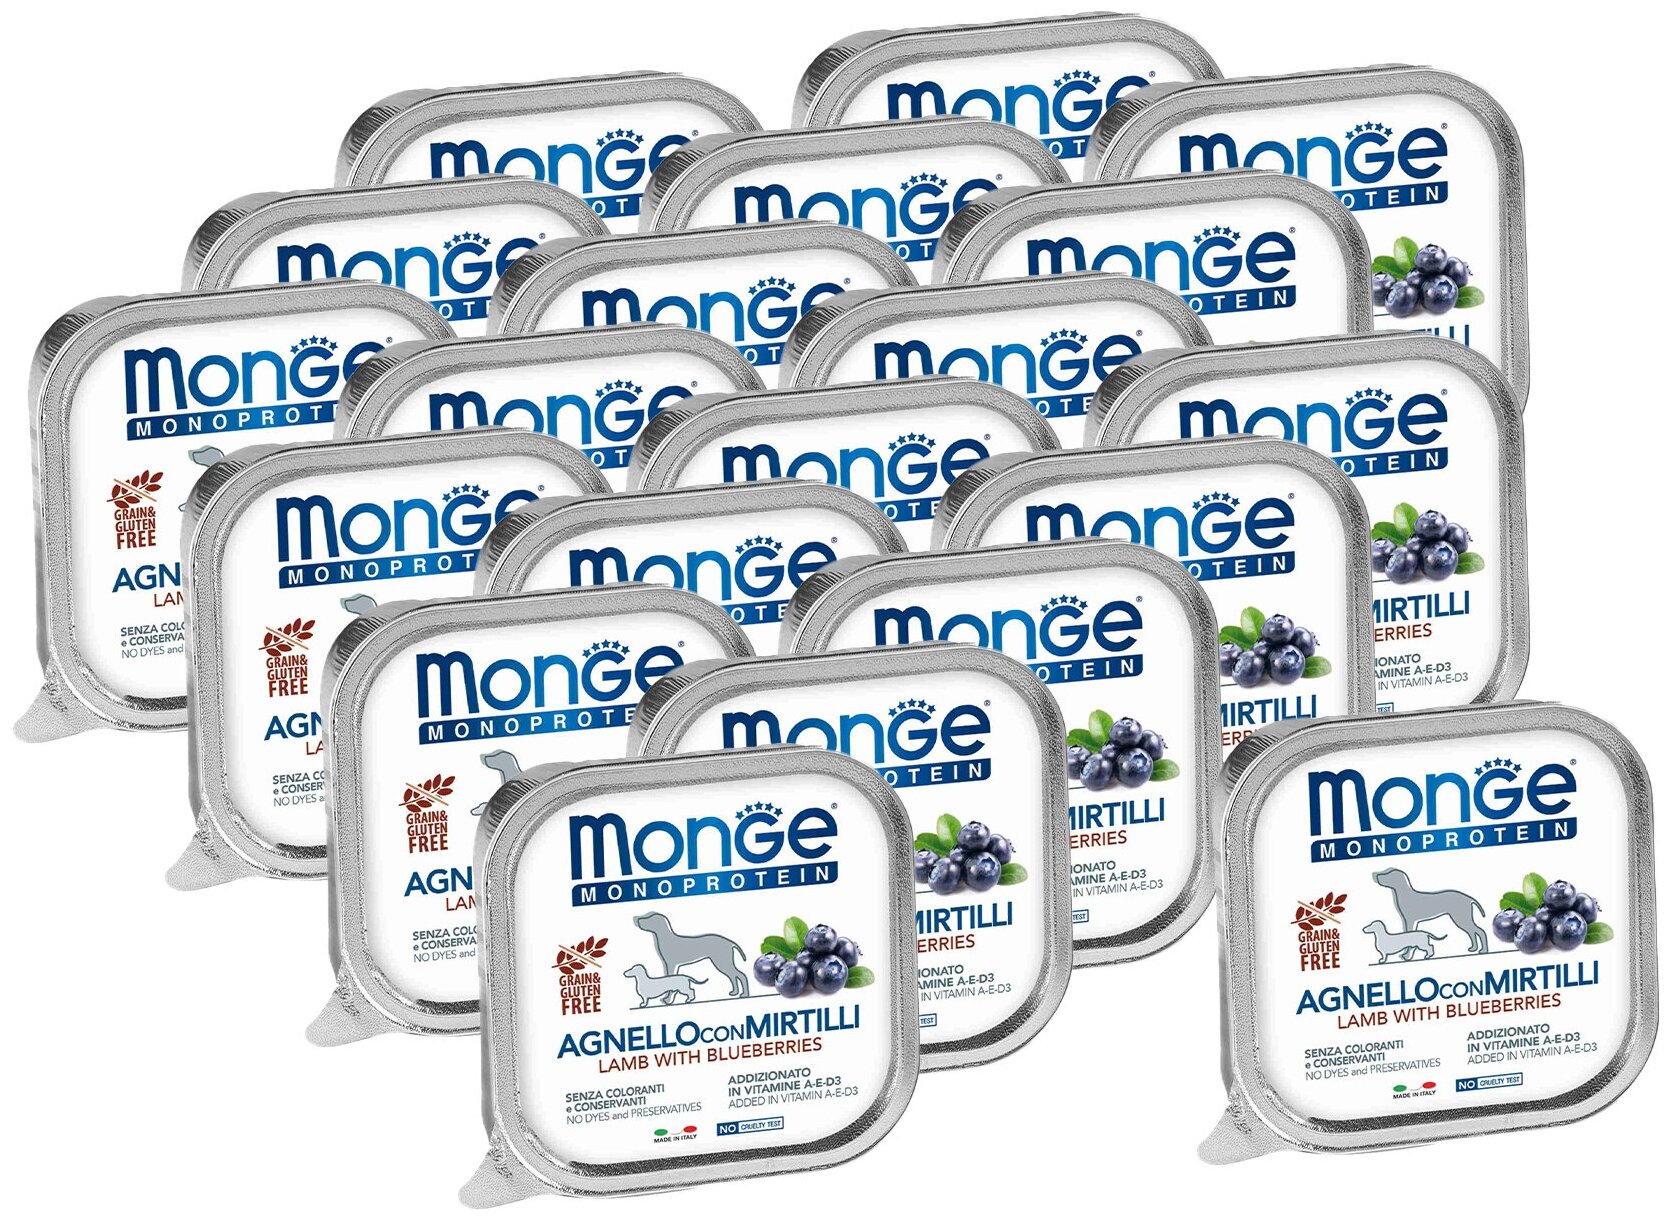 Monge Dog Monoprotein Fruits консервы для собак паштет из ягненка с черникой 150г х 20 шт.